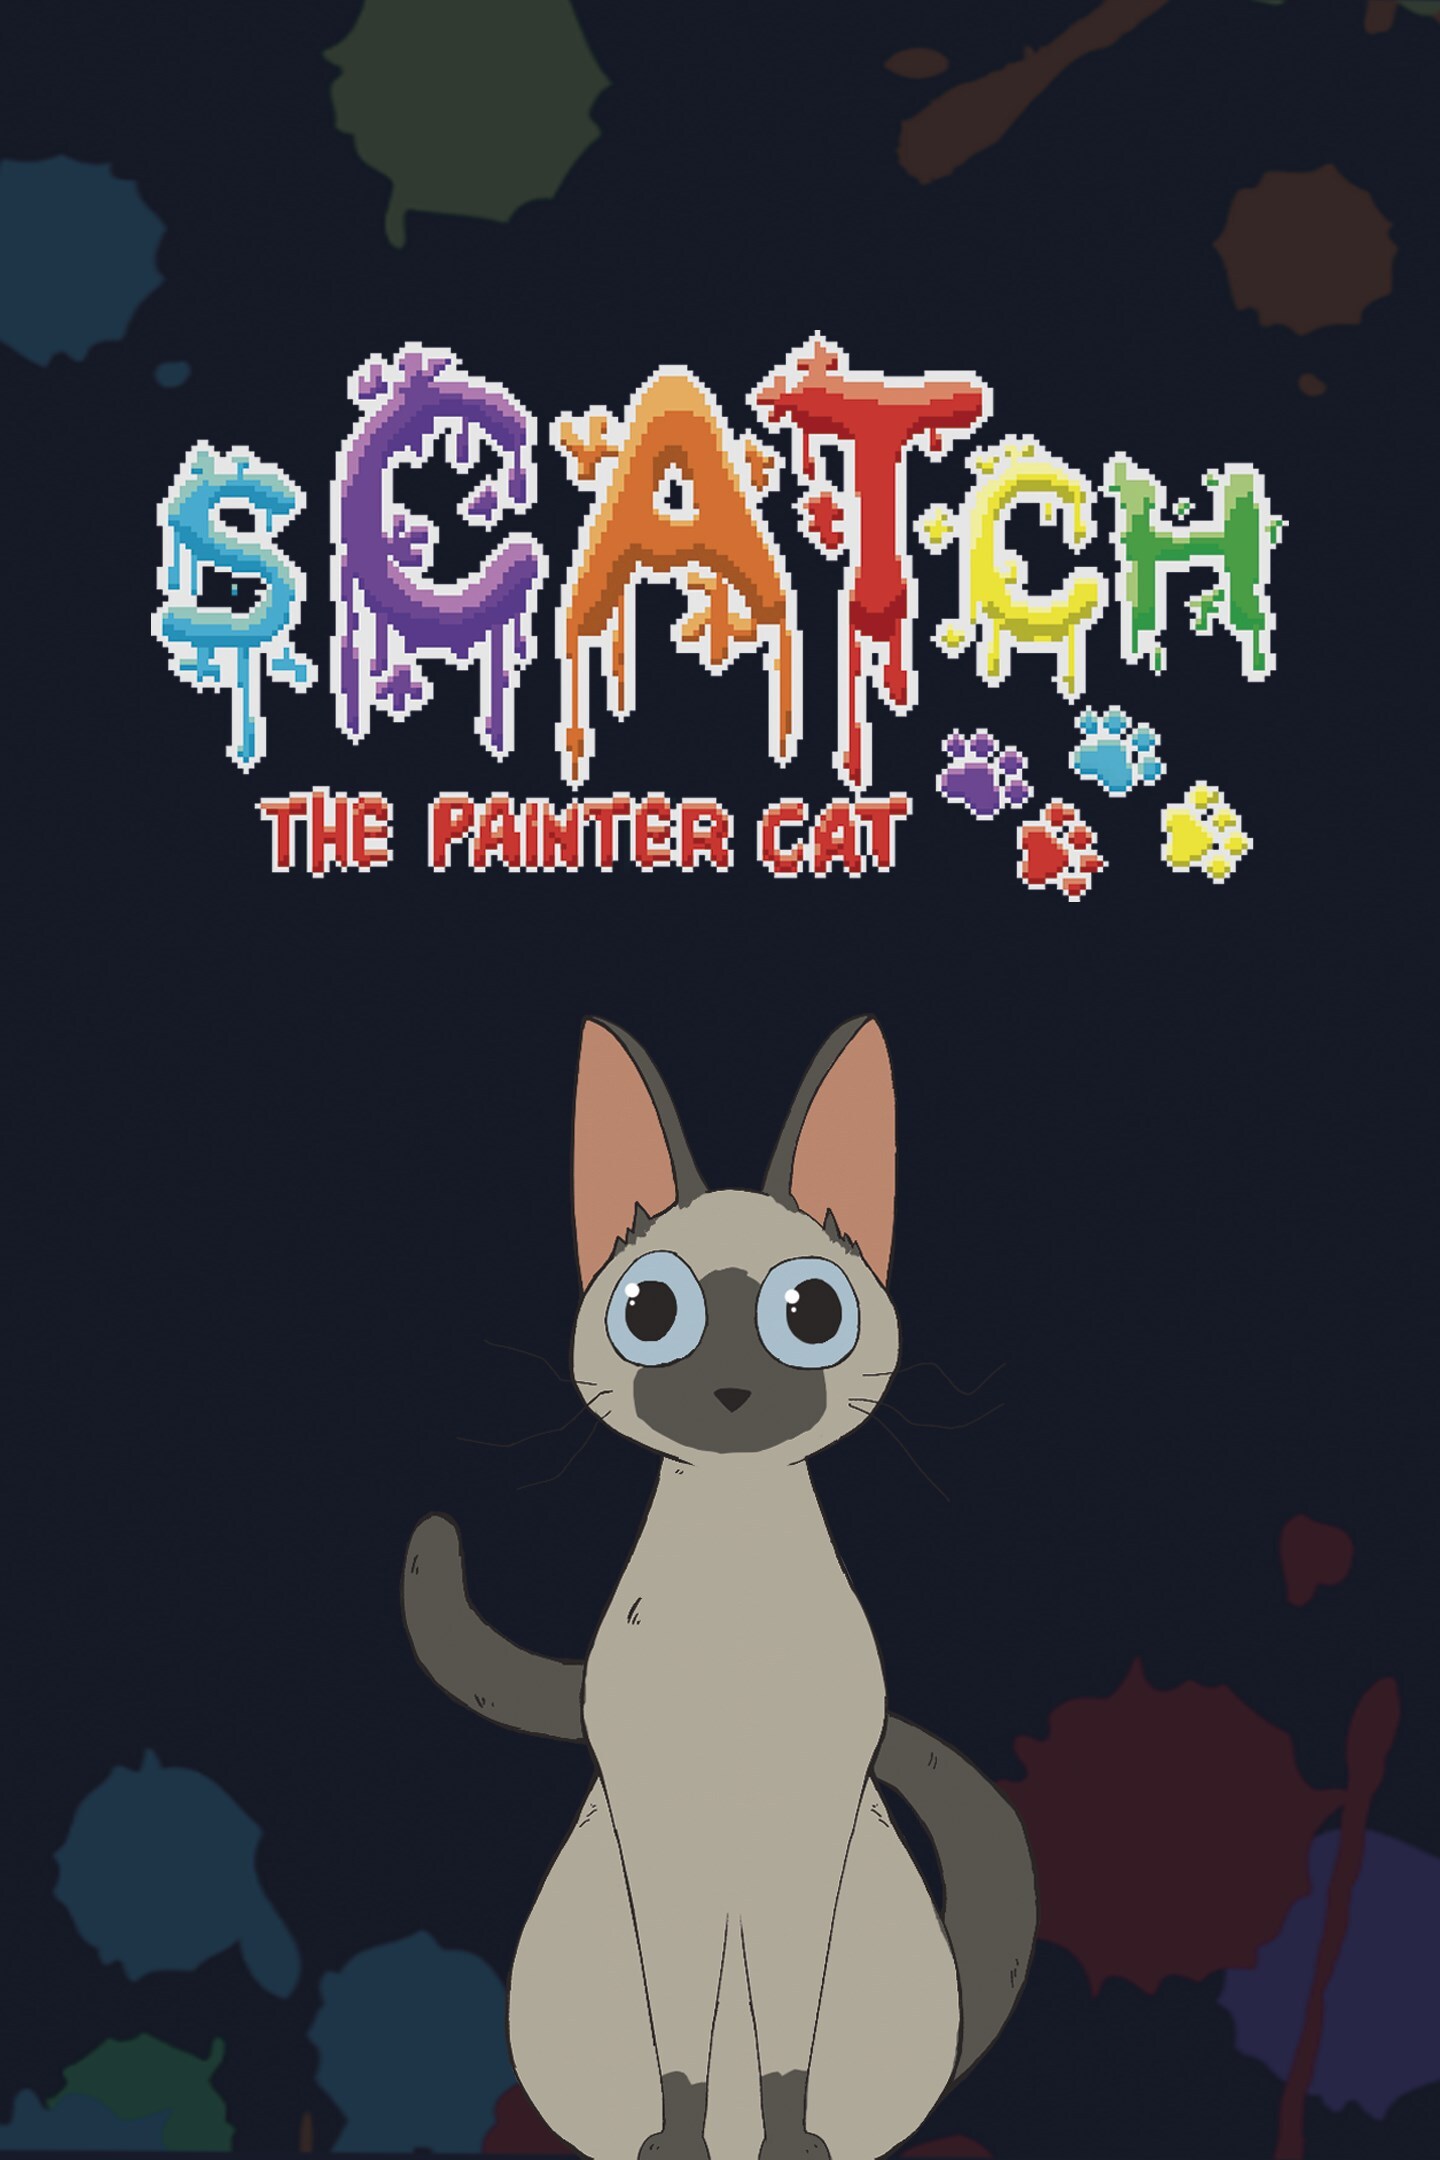 sCATch: The Painter Cat